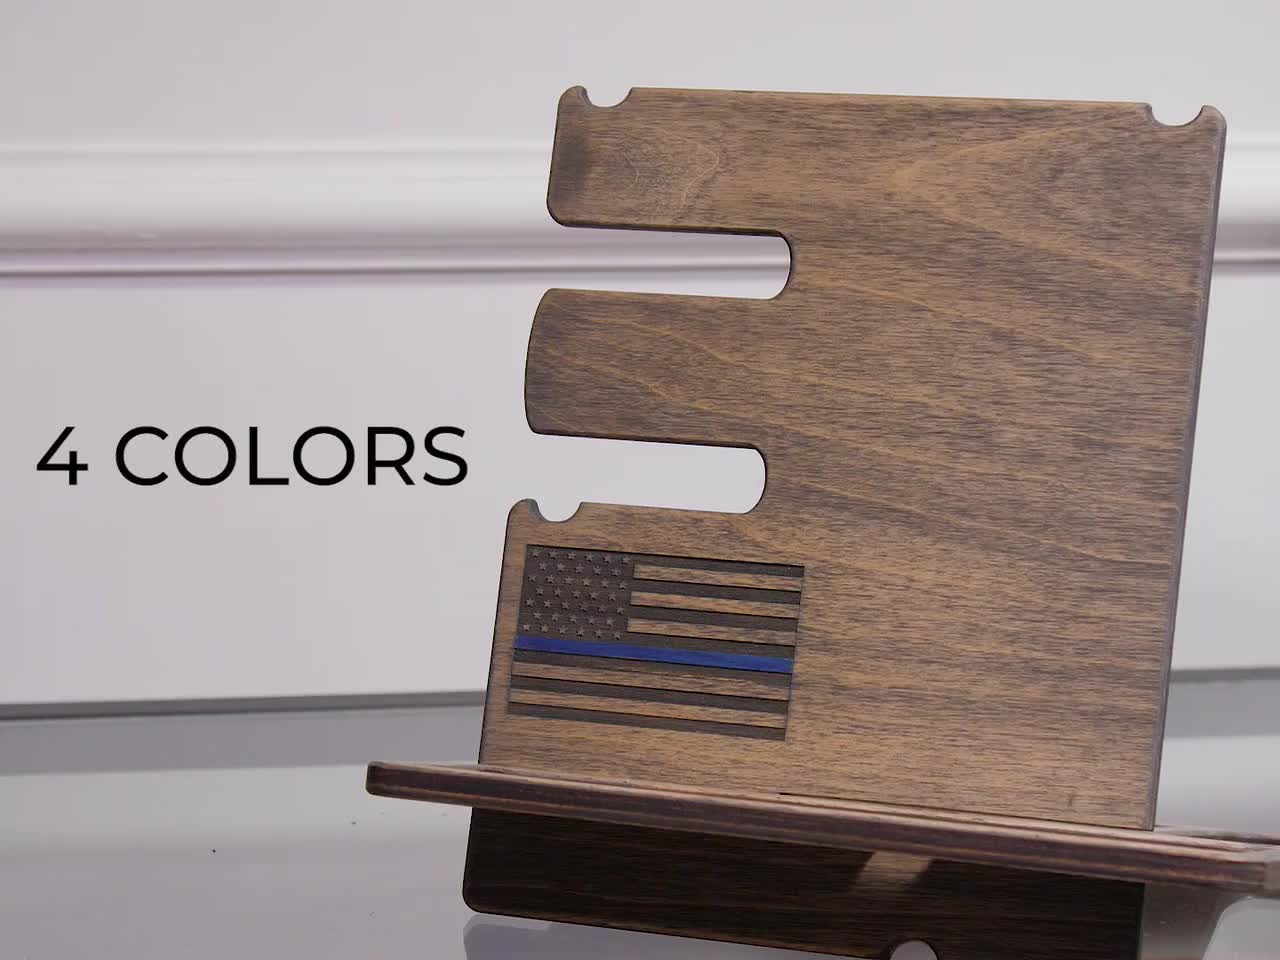  Gooin Global Regalos personalizados con foto personalizada para  hombres que lo tienen todo. Organizadores de escritorio de madera de lujo  hechos a mano, regalo para papá, abuelo, tío, aniversario, : Ropa